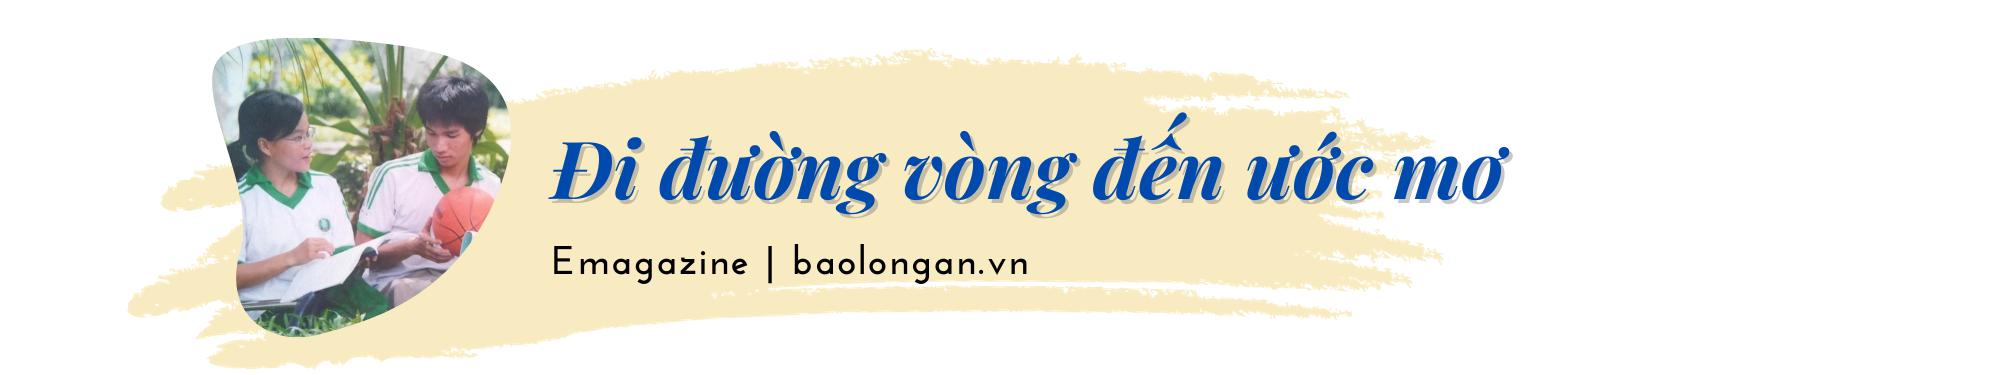 Nguyễn Thị Sari: Chiến thắng nghịch cảnh để sống đẹp hơn mỗi ngày